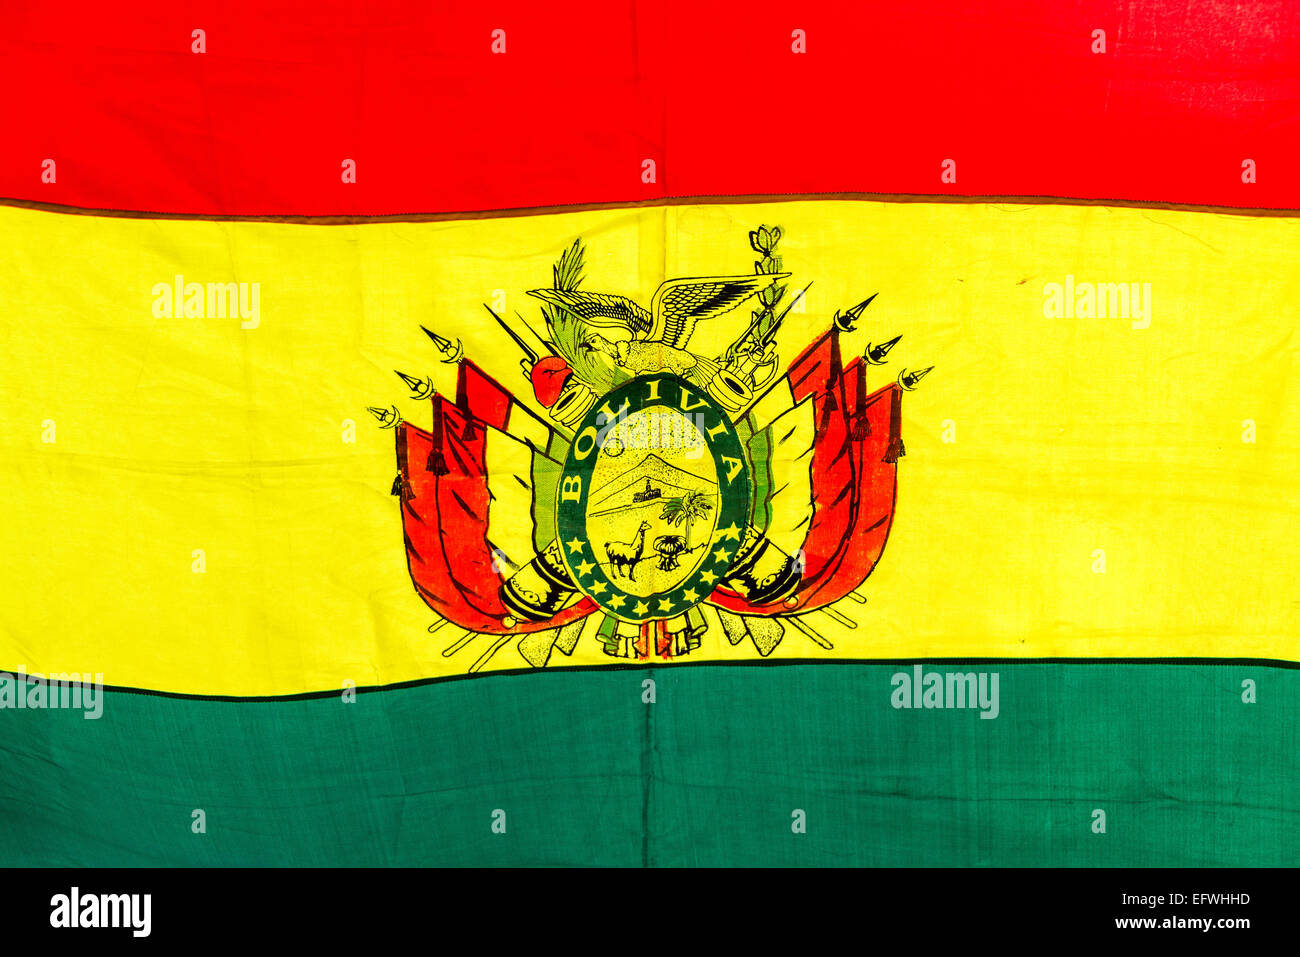 Primo piano vista del rosso, giallo e verde della bandiera boliviana Foto Stock